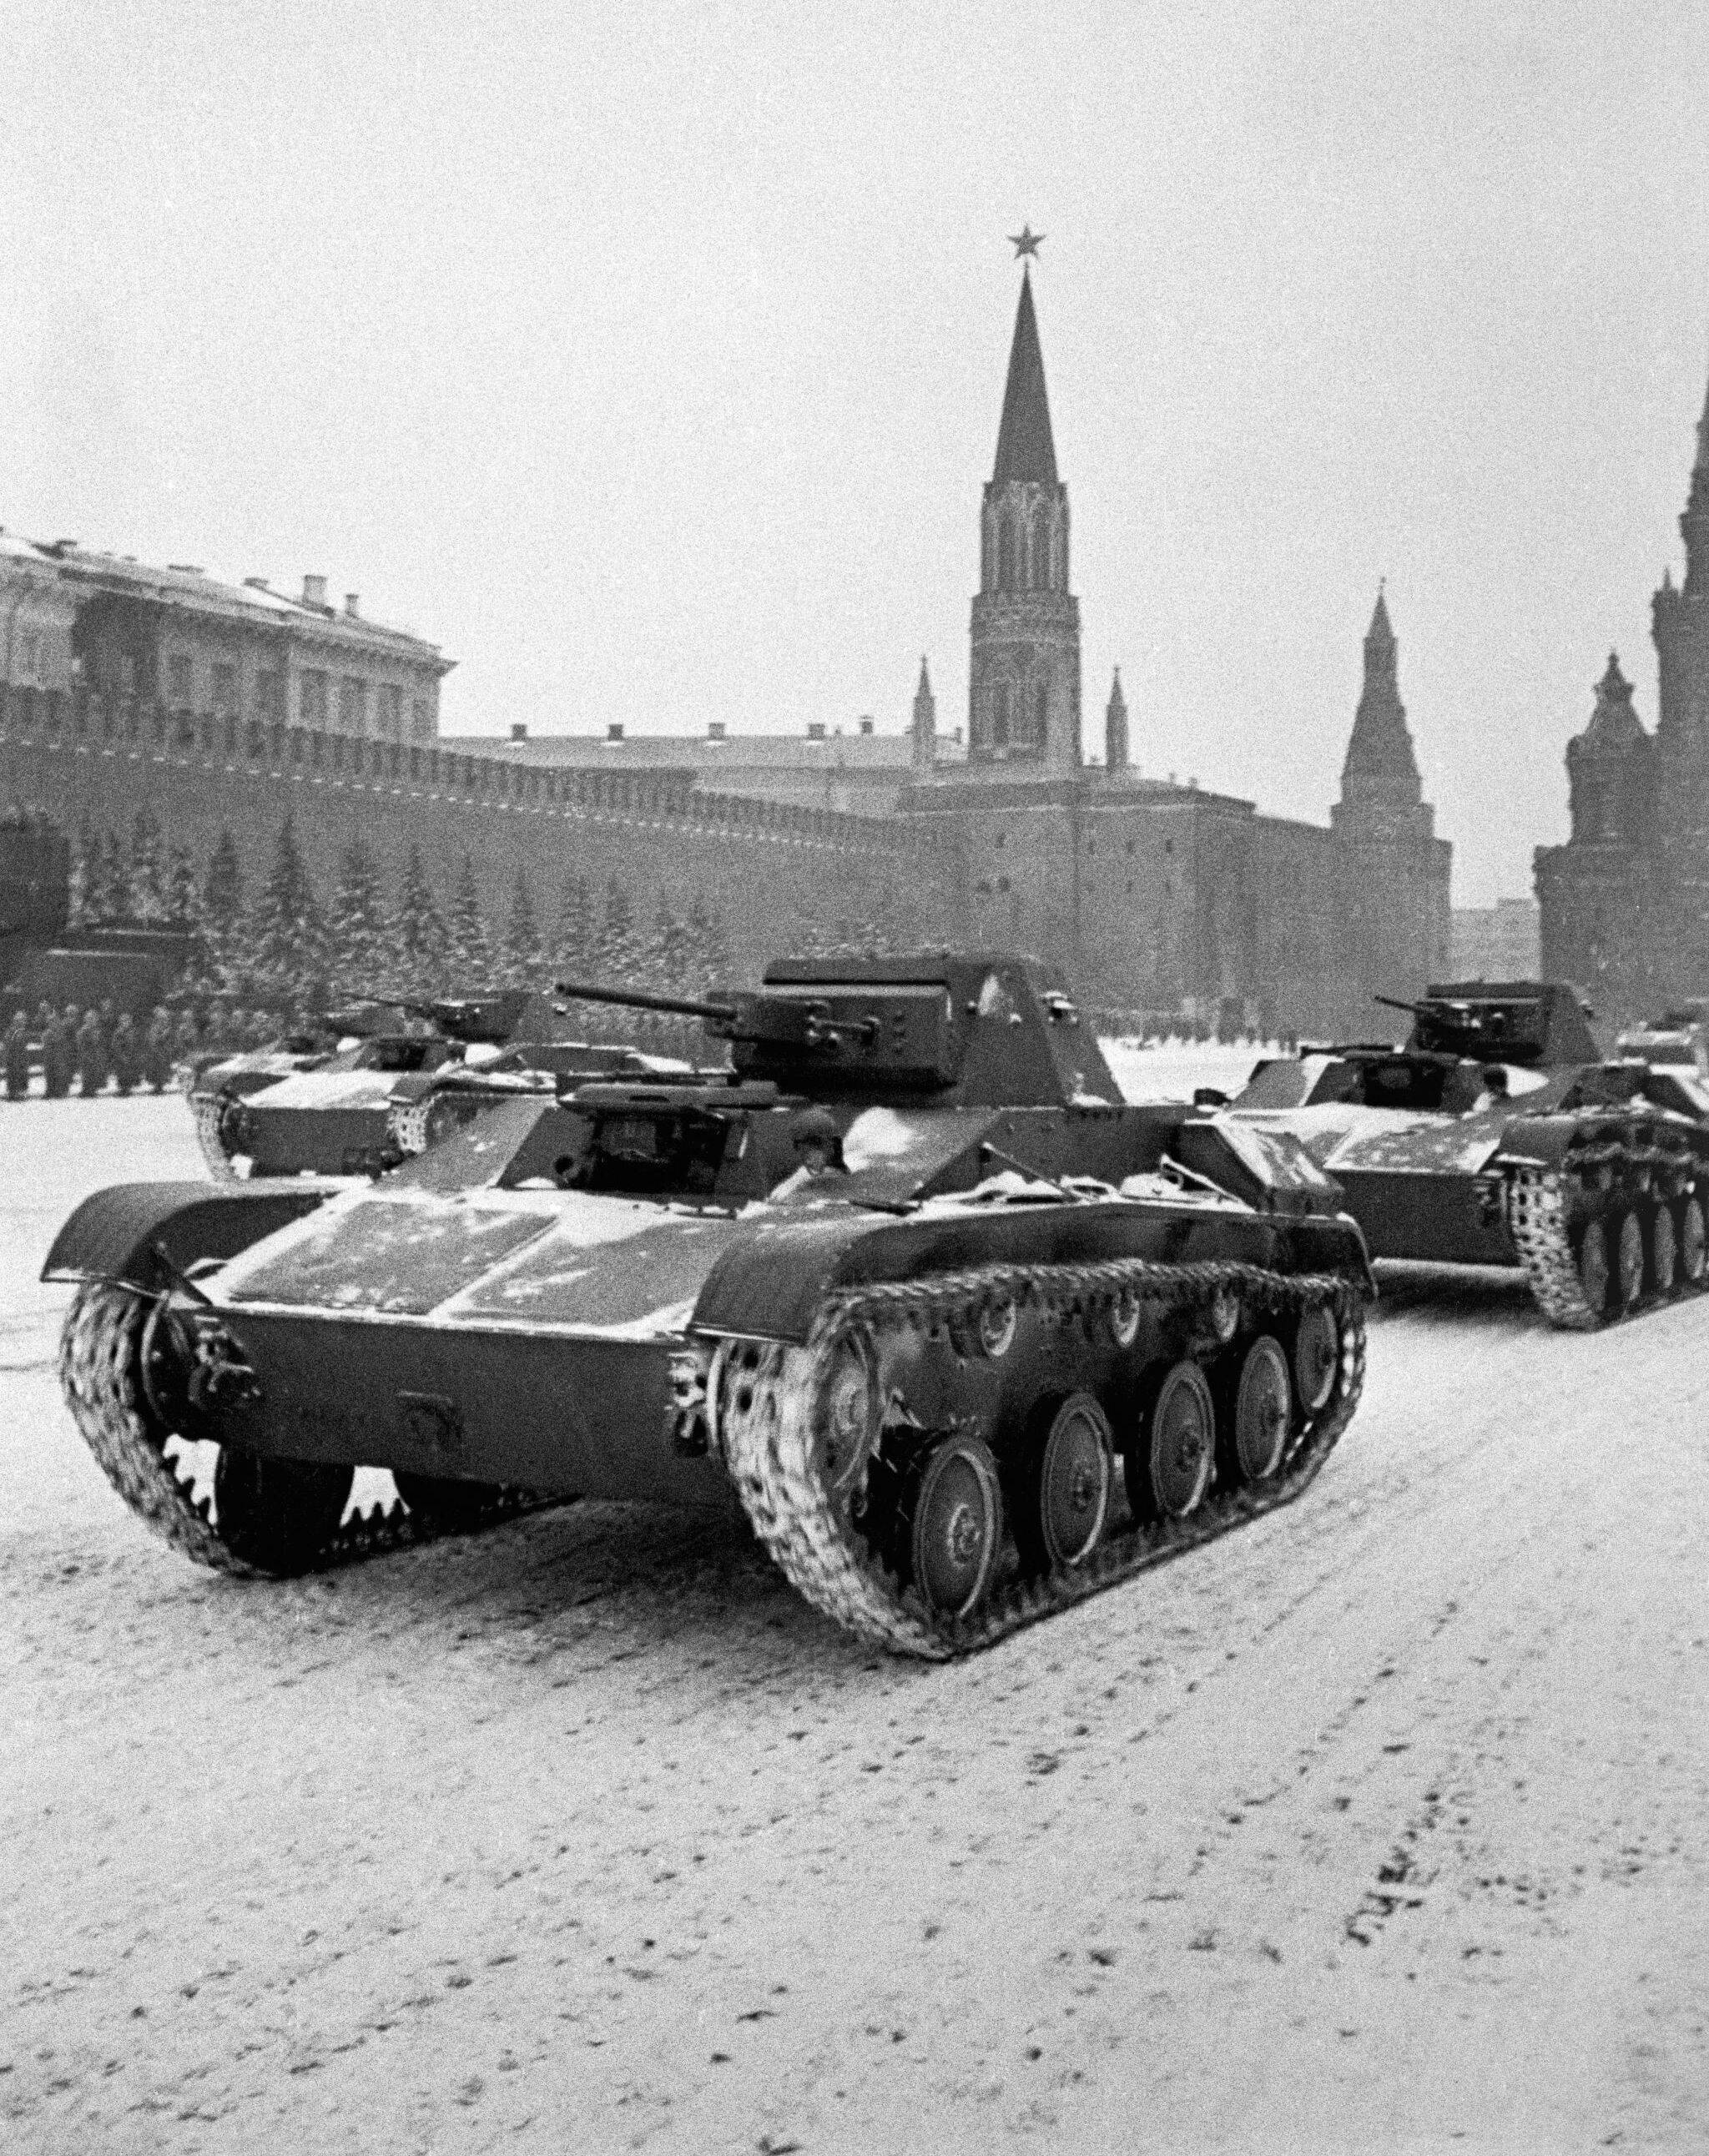 Танк т-34: лучший советский танк, история создания, характеристики